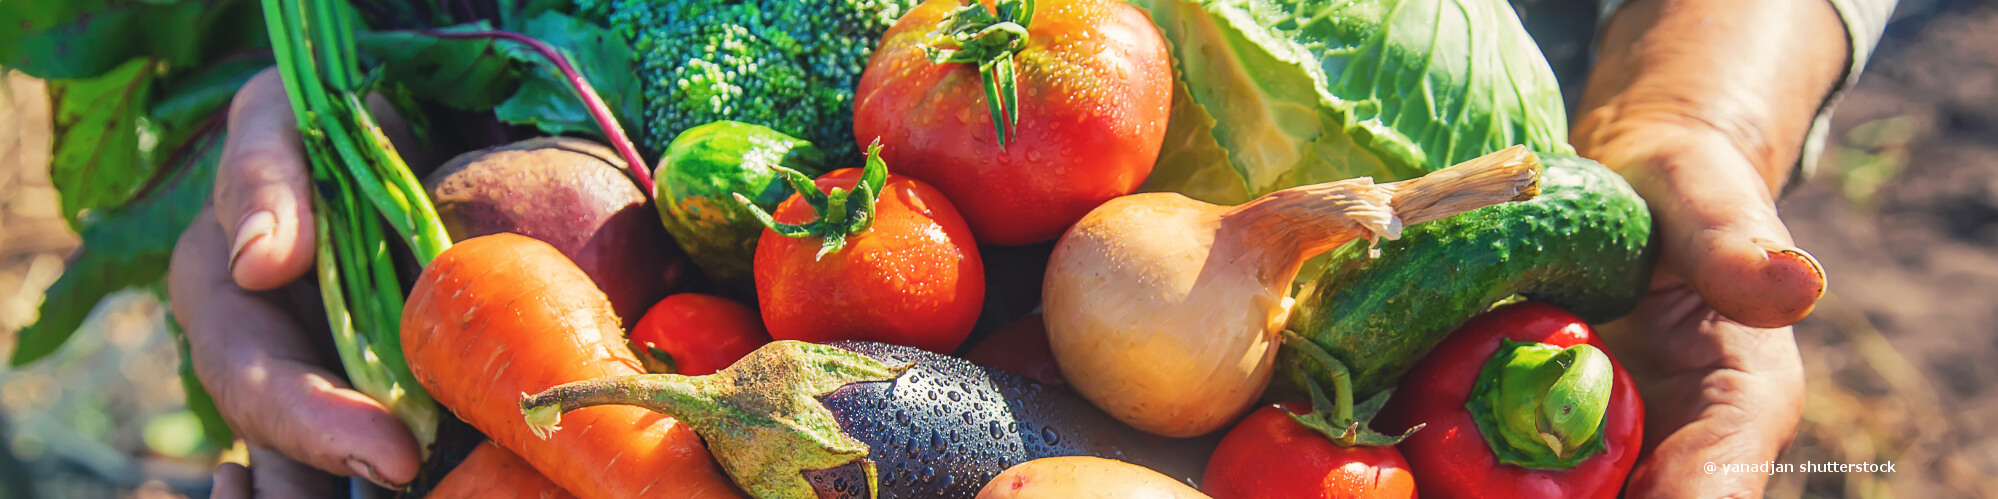 HACK engrais organique pour fruits et légumes